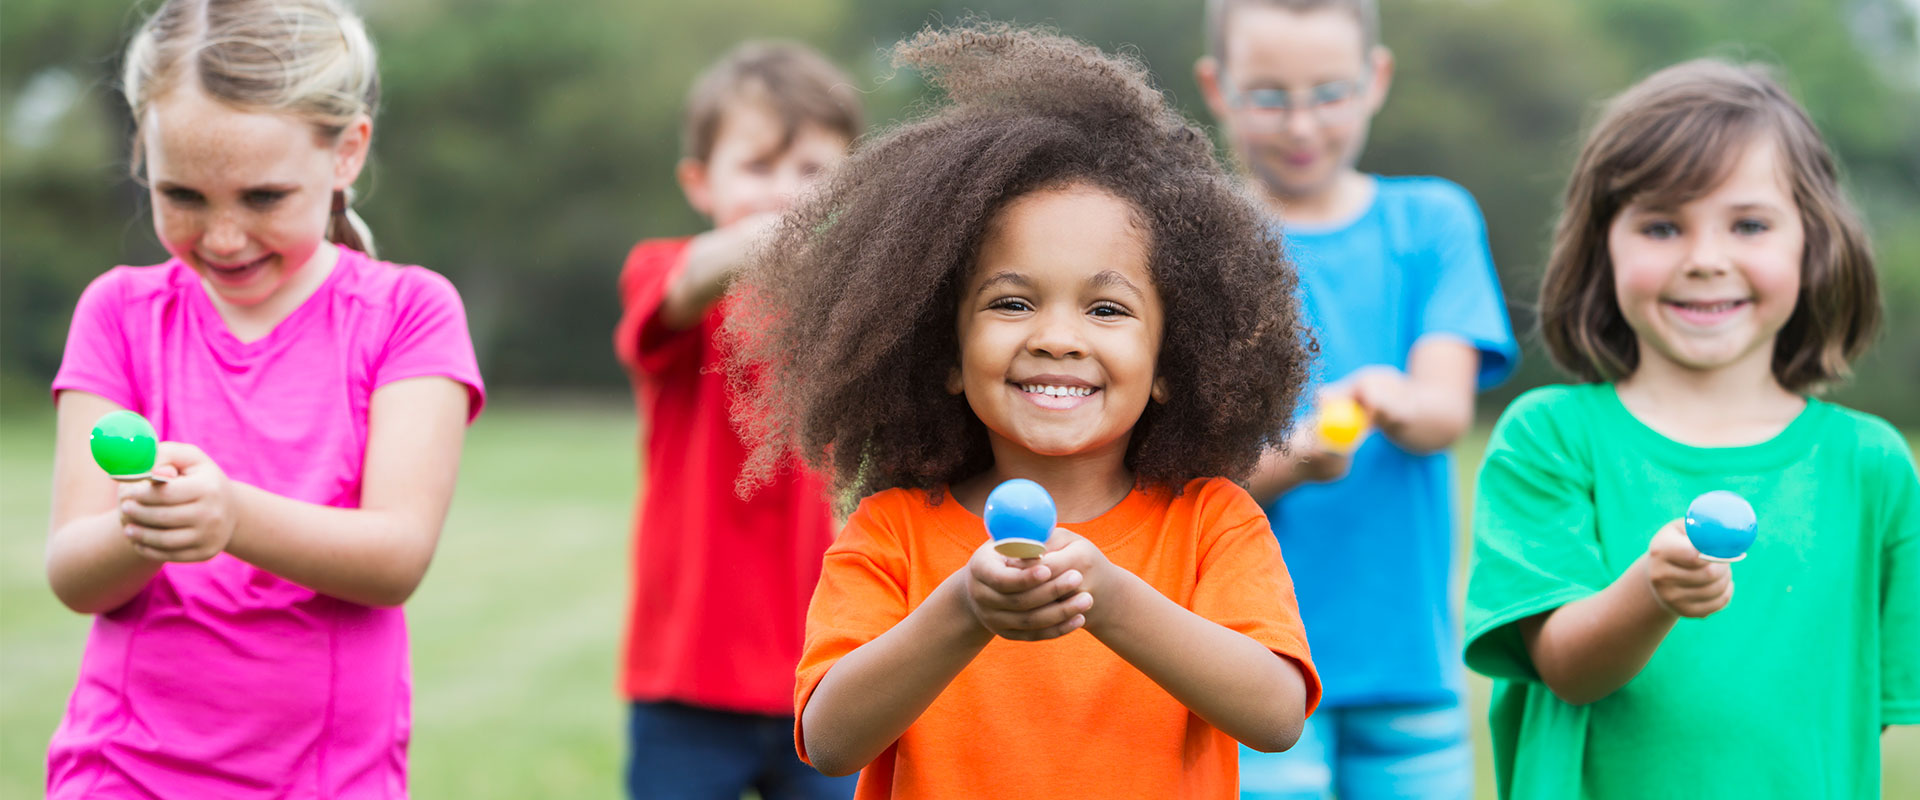 10 Fundraising Activities for Preschoolers